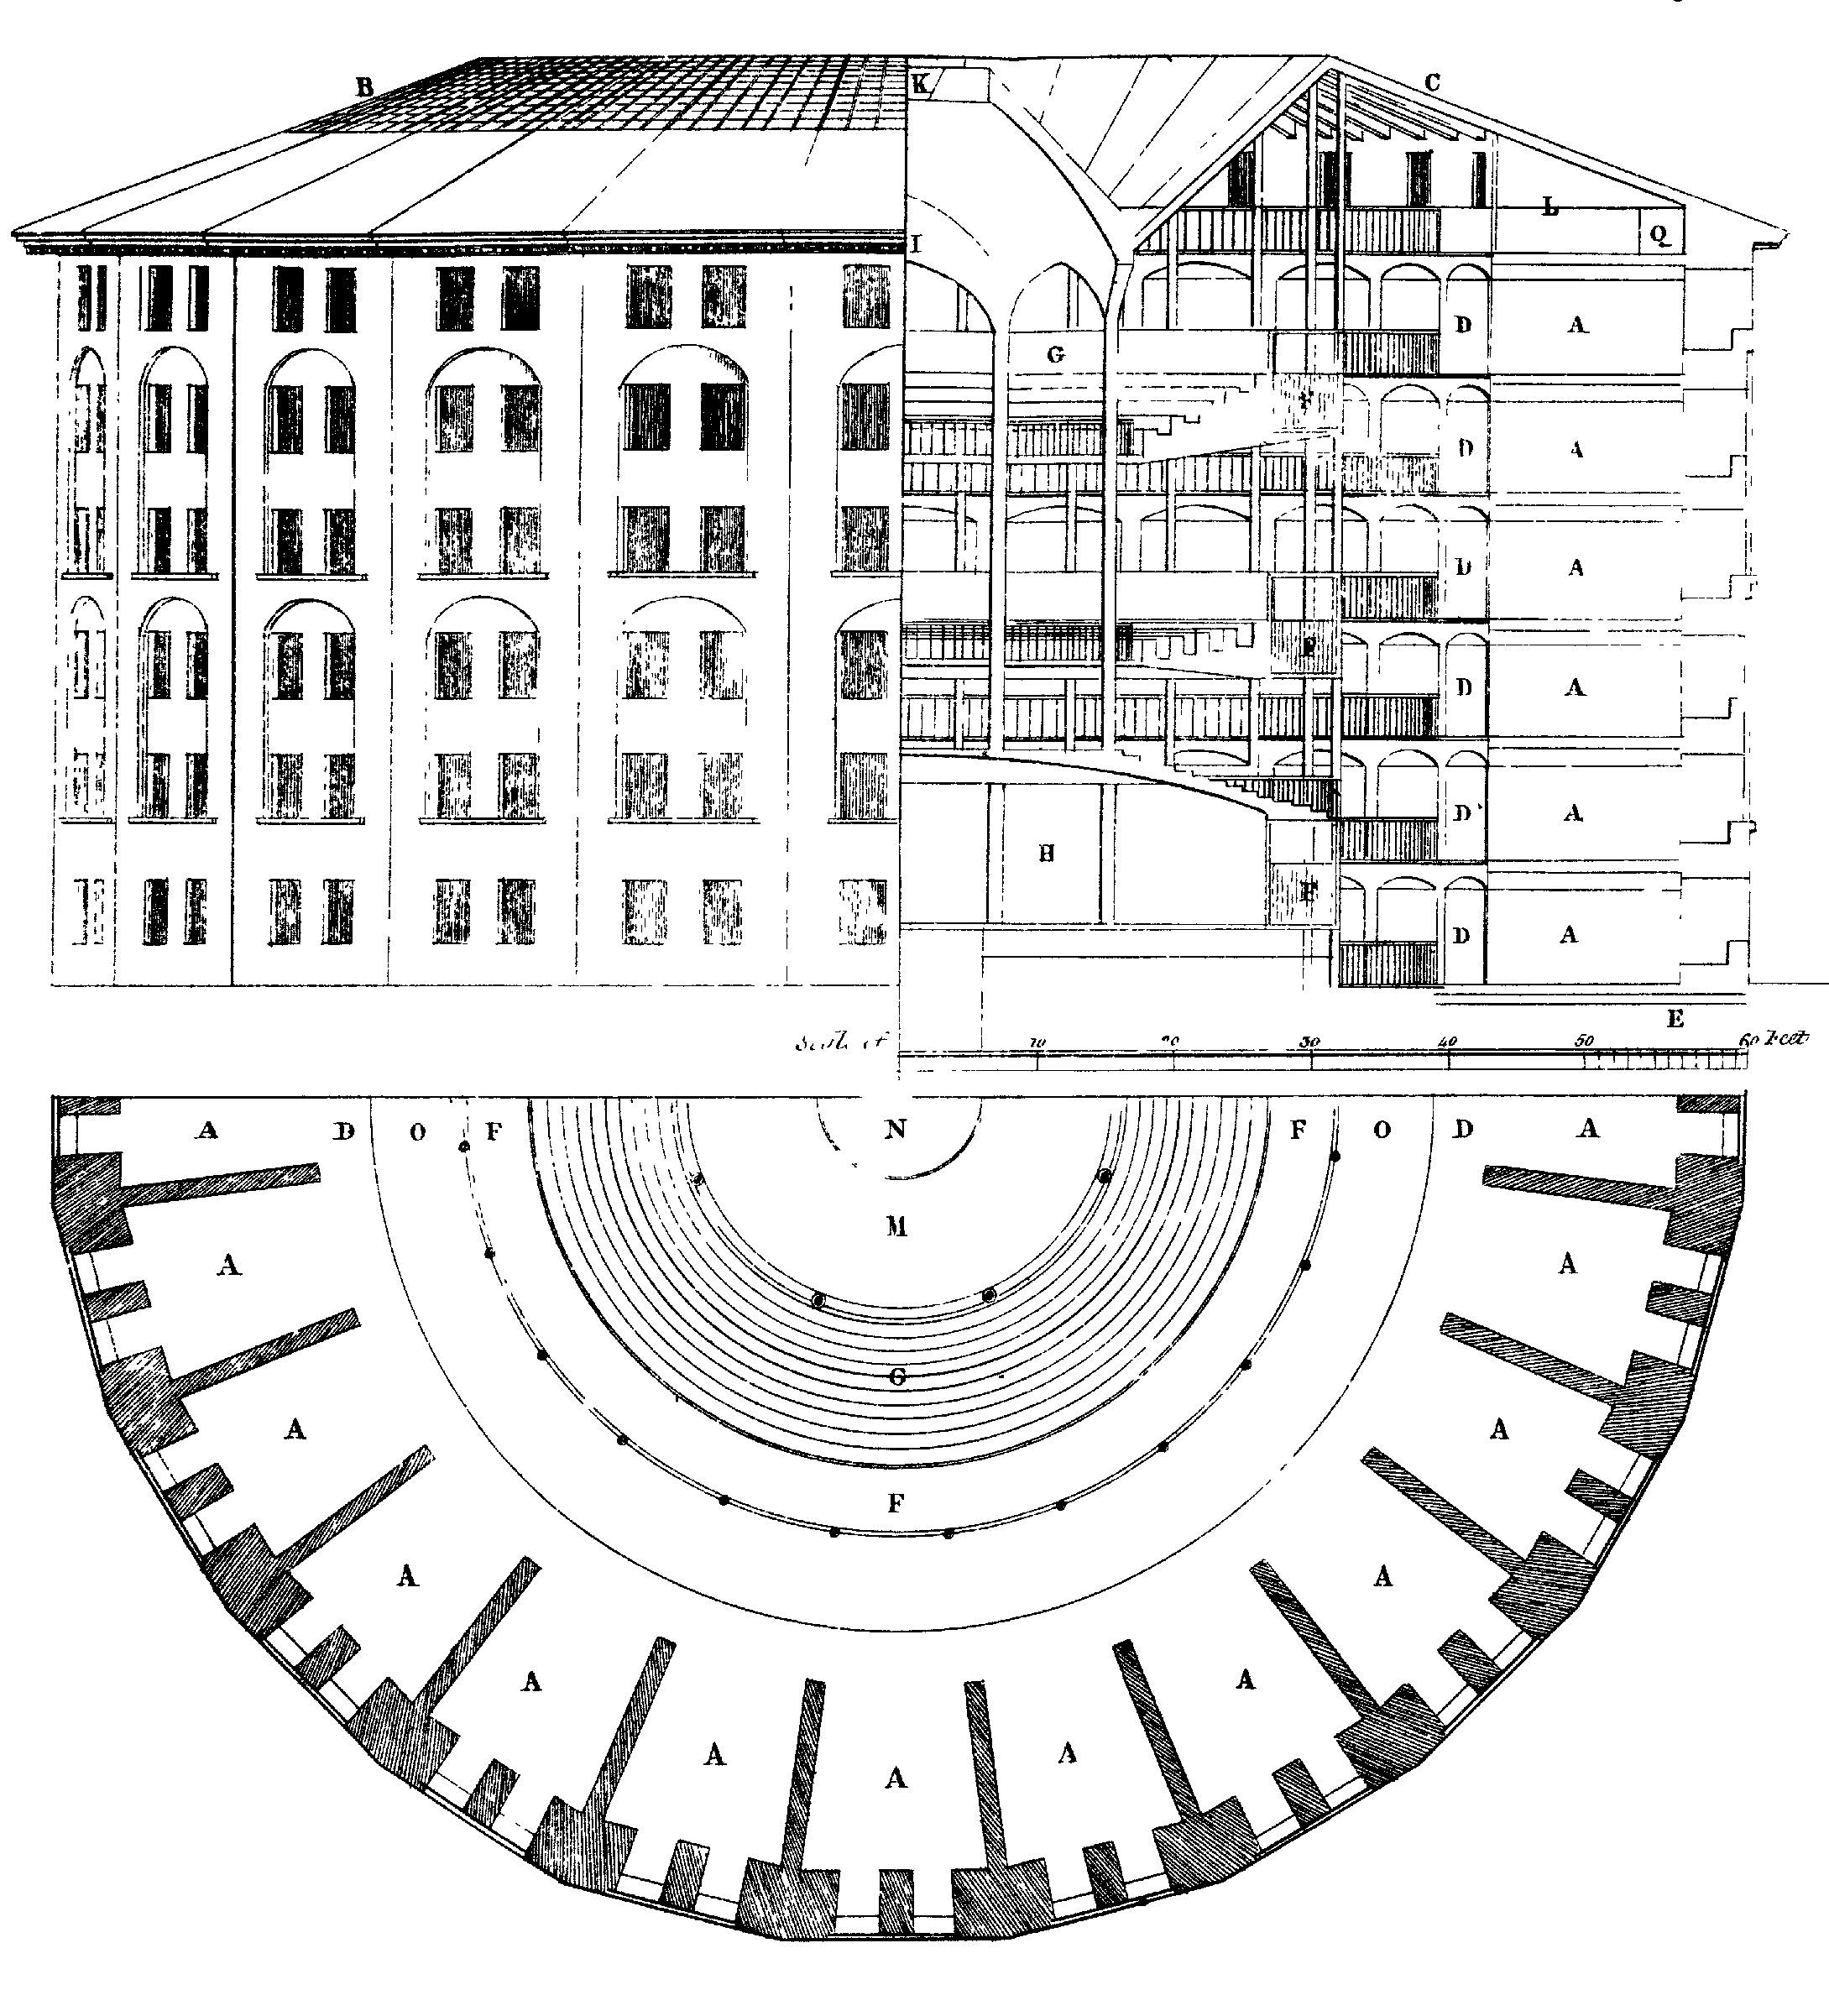 Figure 6.3: Panopticon Design de carcere, primo propositum per Hieremiam Bentham. In centrum est omnium et invisibilium vates mores observare servari nequeat. By Marcus Reveley trahens, 1791. Source: Vicimediis Communibus.